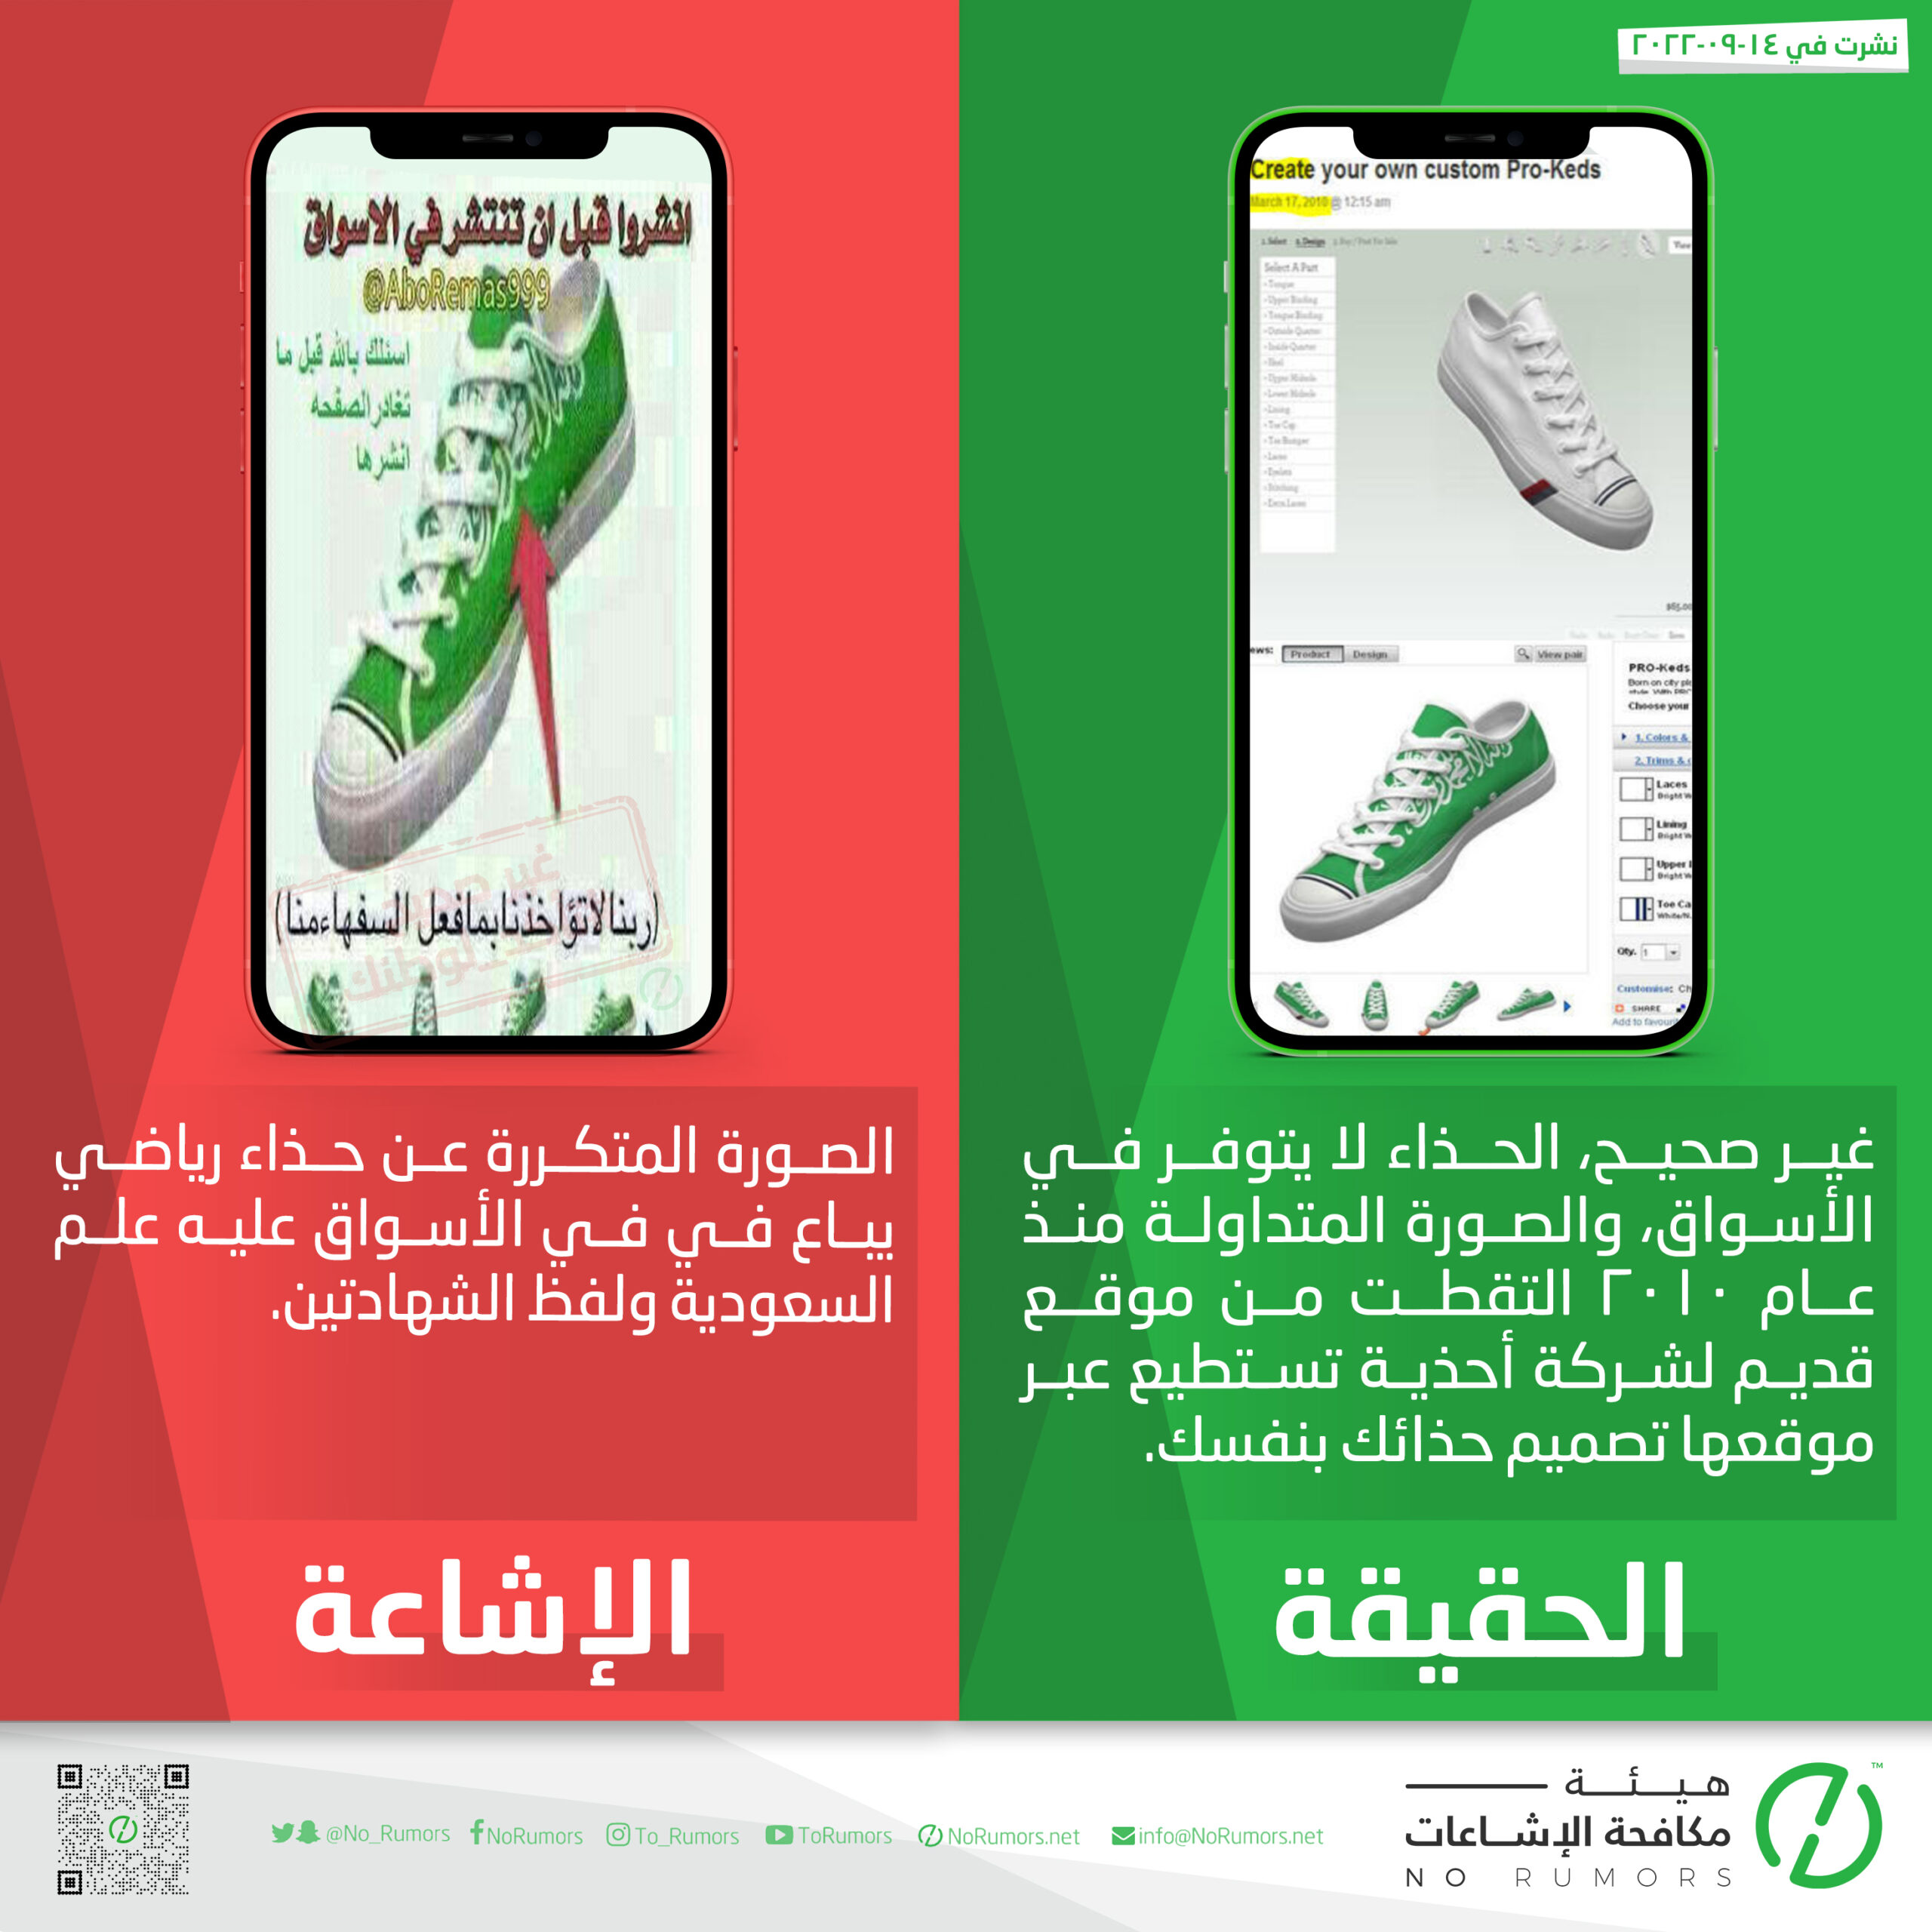 حقيقة الصورة المتكررة عن حذاء رياضي يباع في في الأسواق عليه علم السعودية ولفظ الشهادتين